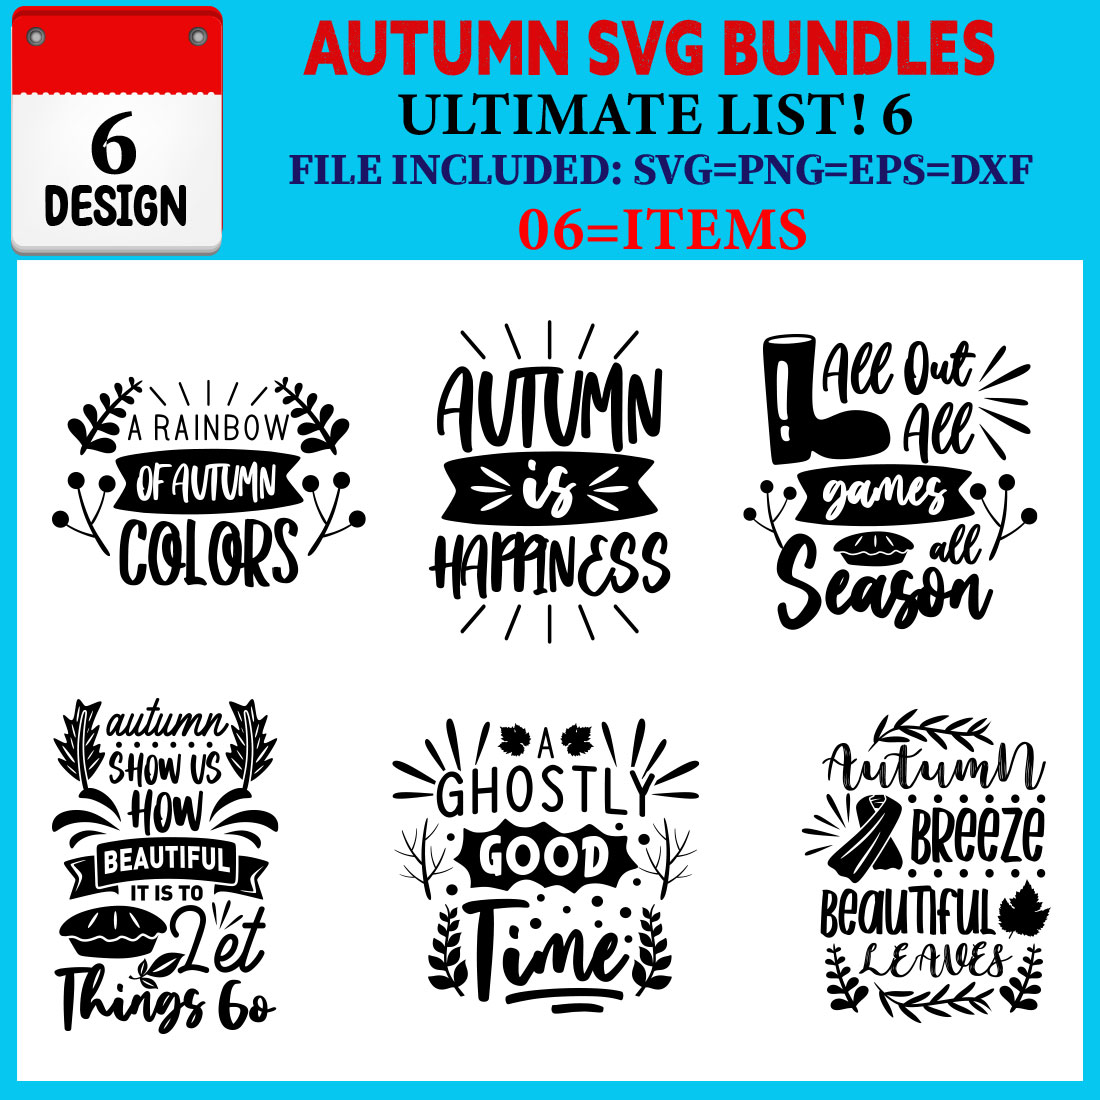 Autumn T-shirt Design Bundle Vol-01 cover image.